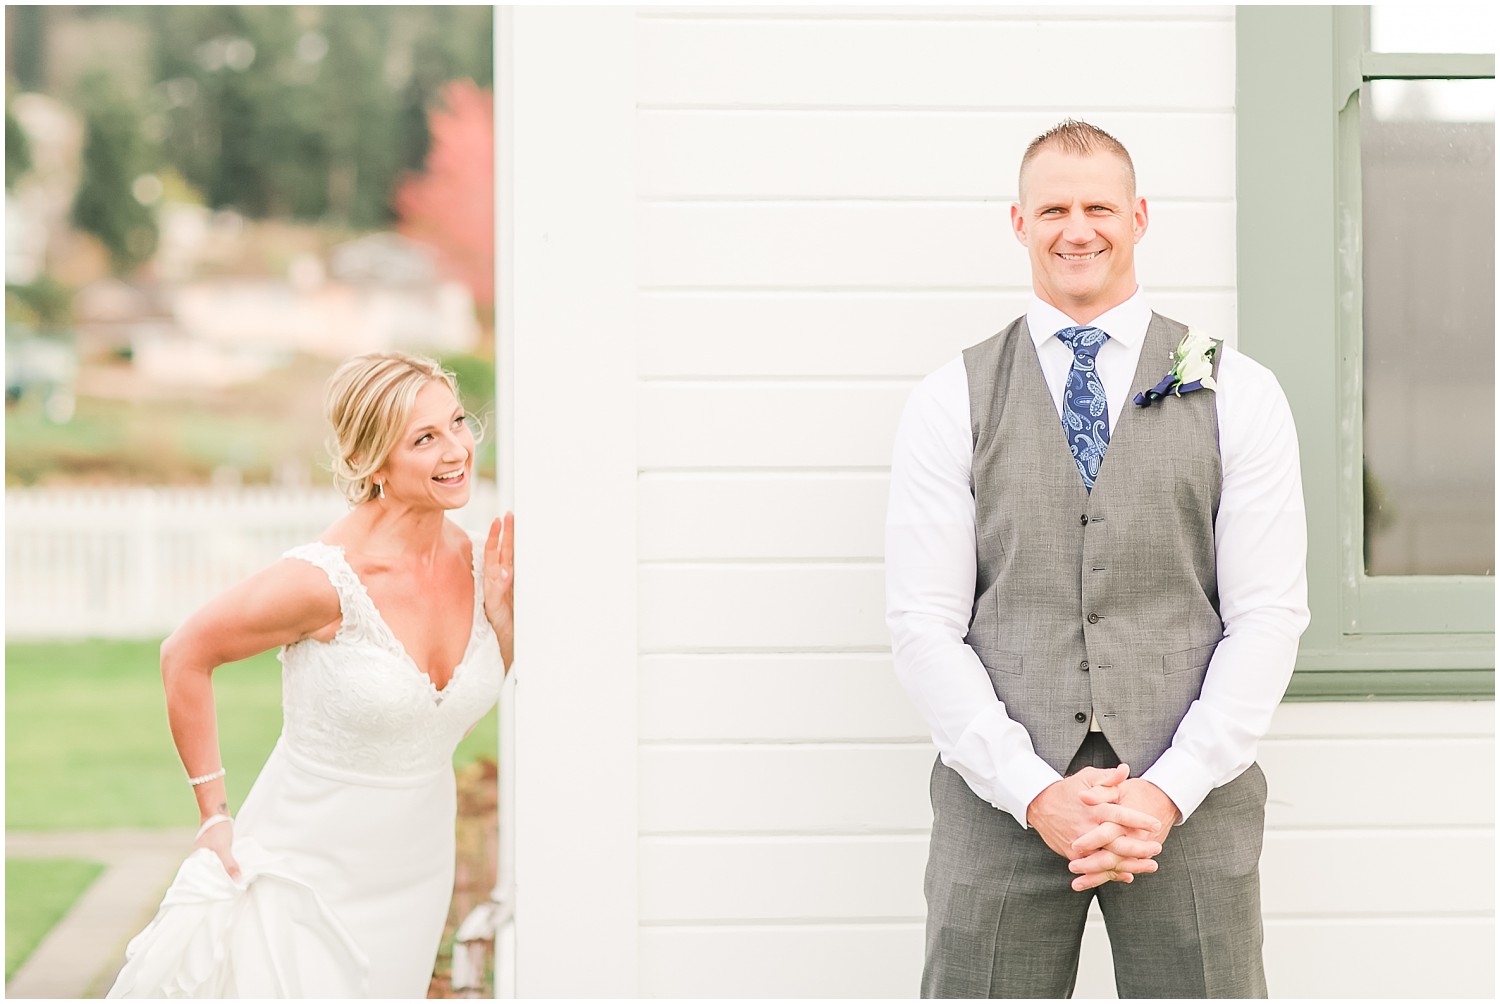 Rosehill Community Center Wedding | Kris & Melissa